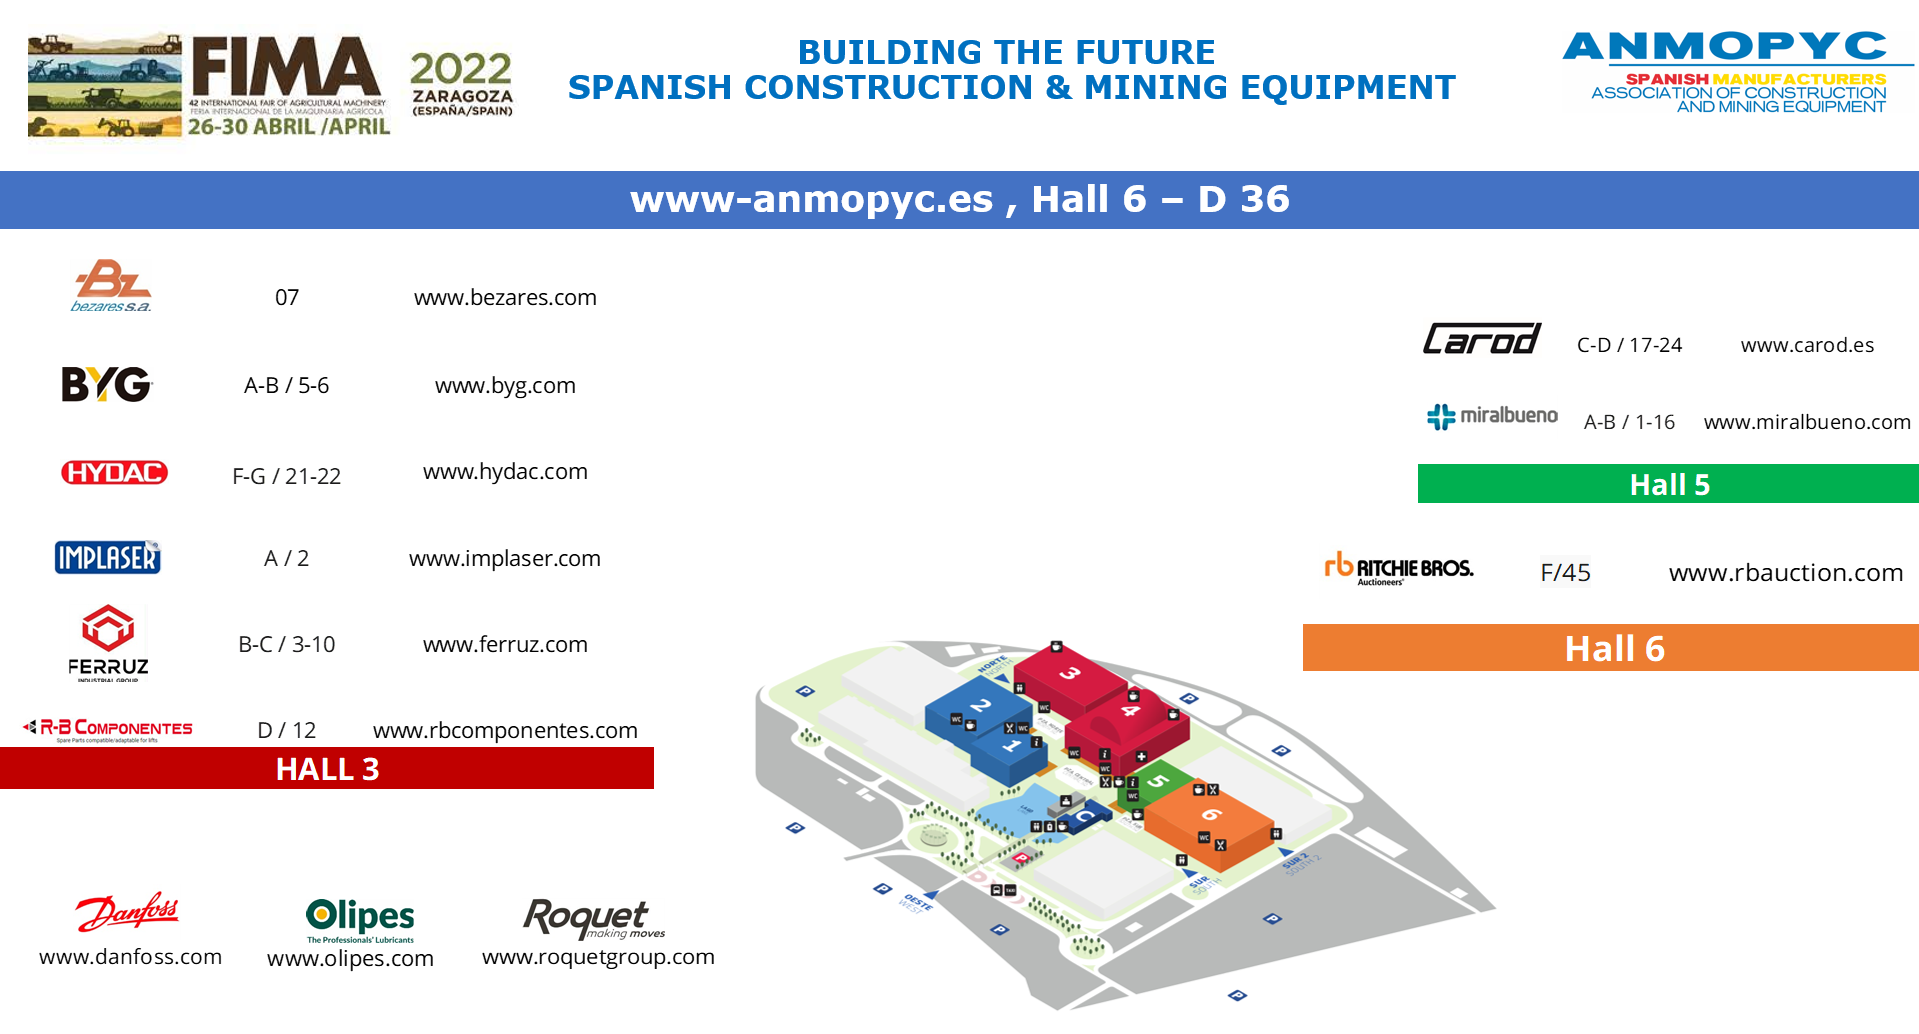 ANMOPYC participa en FIMA 2022, Zaragoza, 26 al 30 de Abril